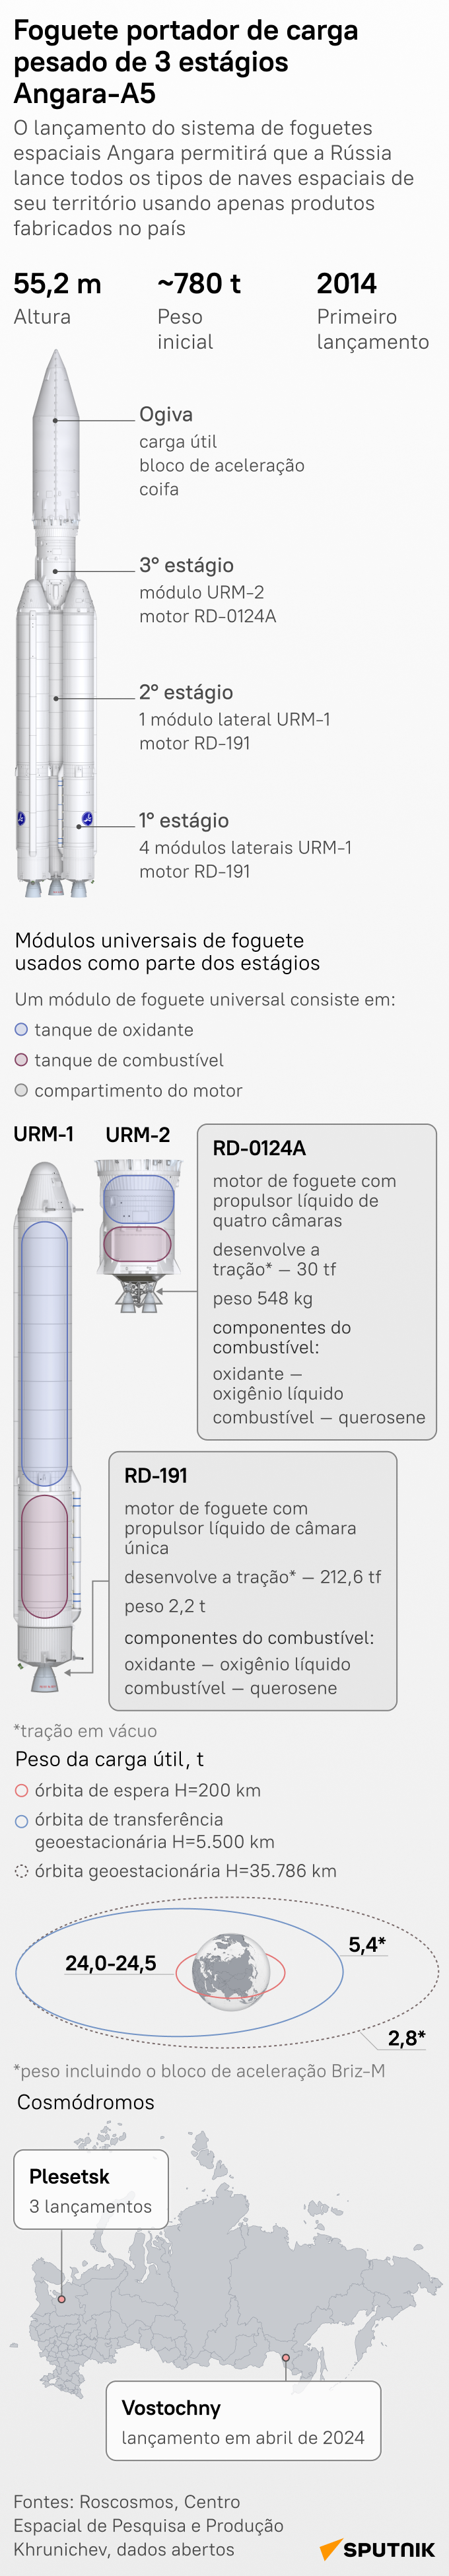 Conheça Angara-A5, um foguete russo com potencial avançado e baixos custos ambientais - Sputnik Brasil